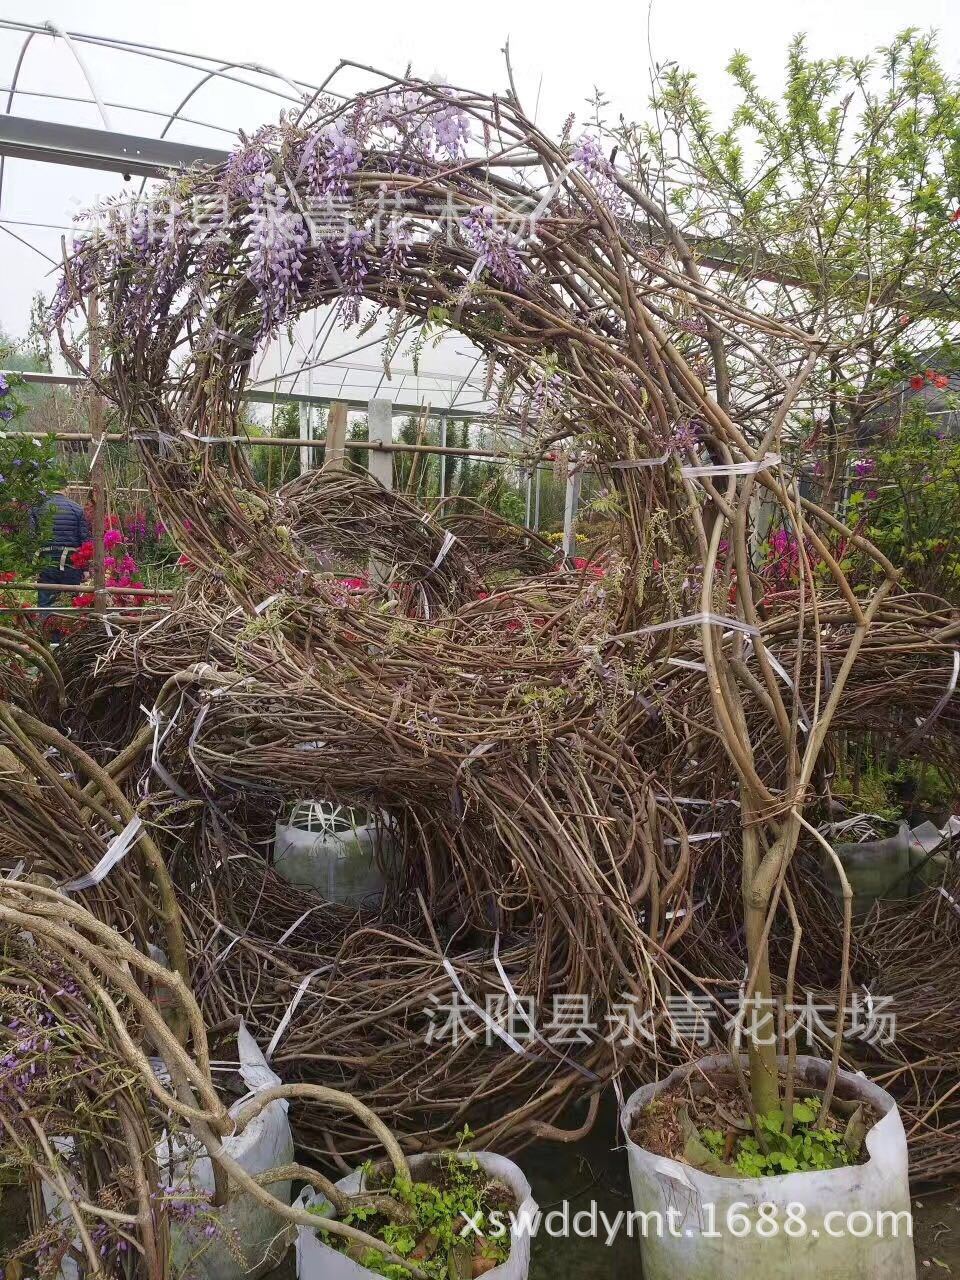 出售优质大规格紫藤 藤条长6 10米长度 可直接上花架 长穗紫藤 阿里巴巴